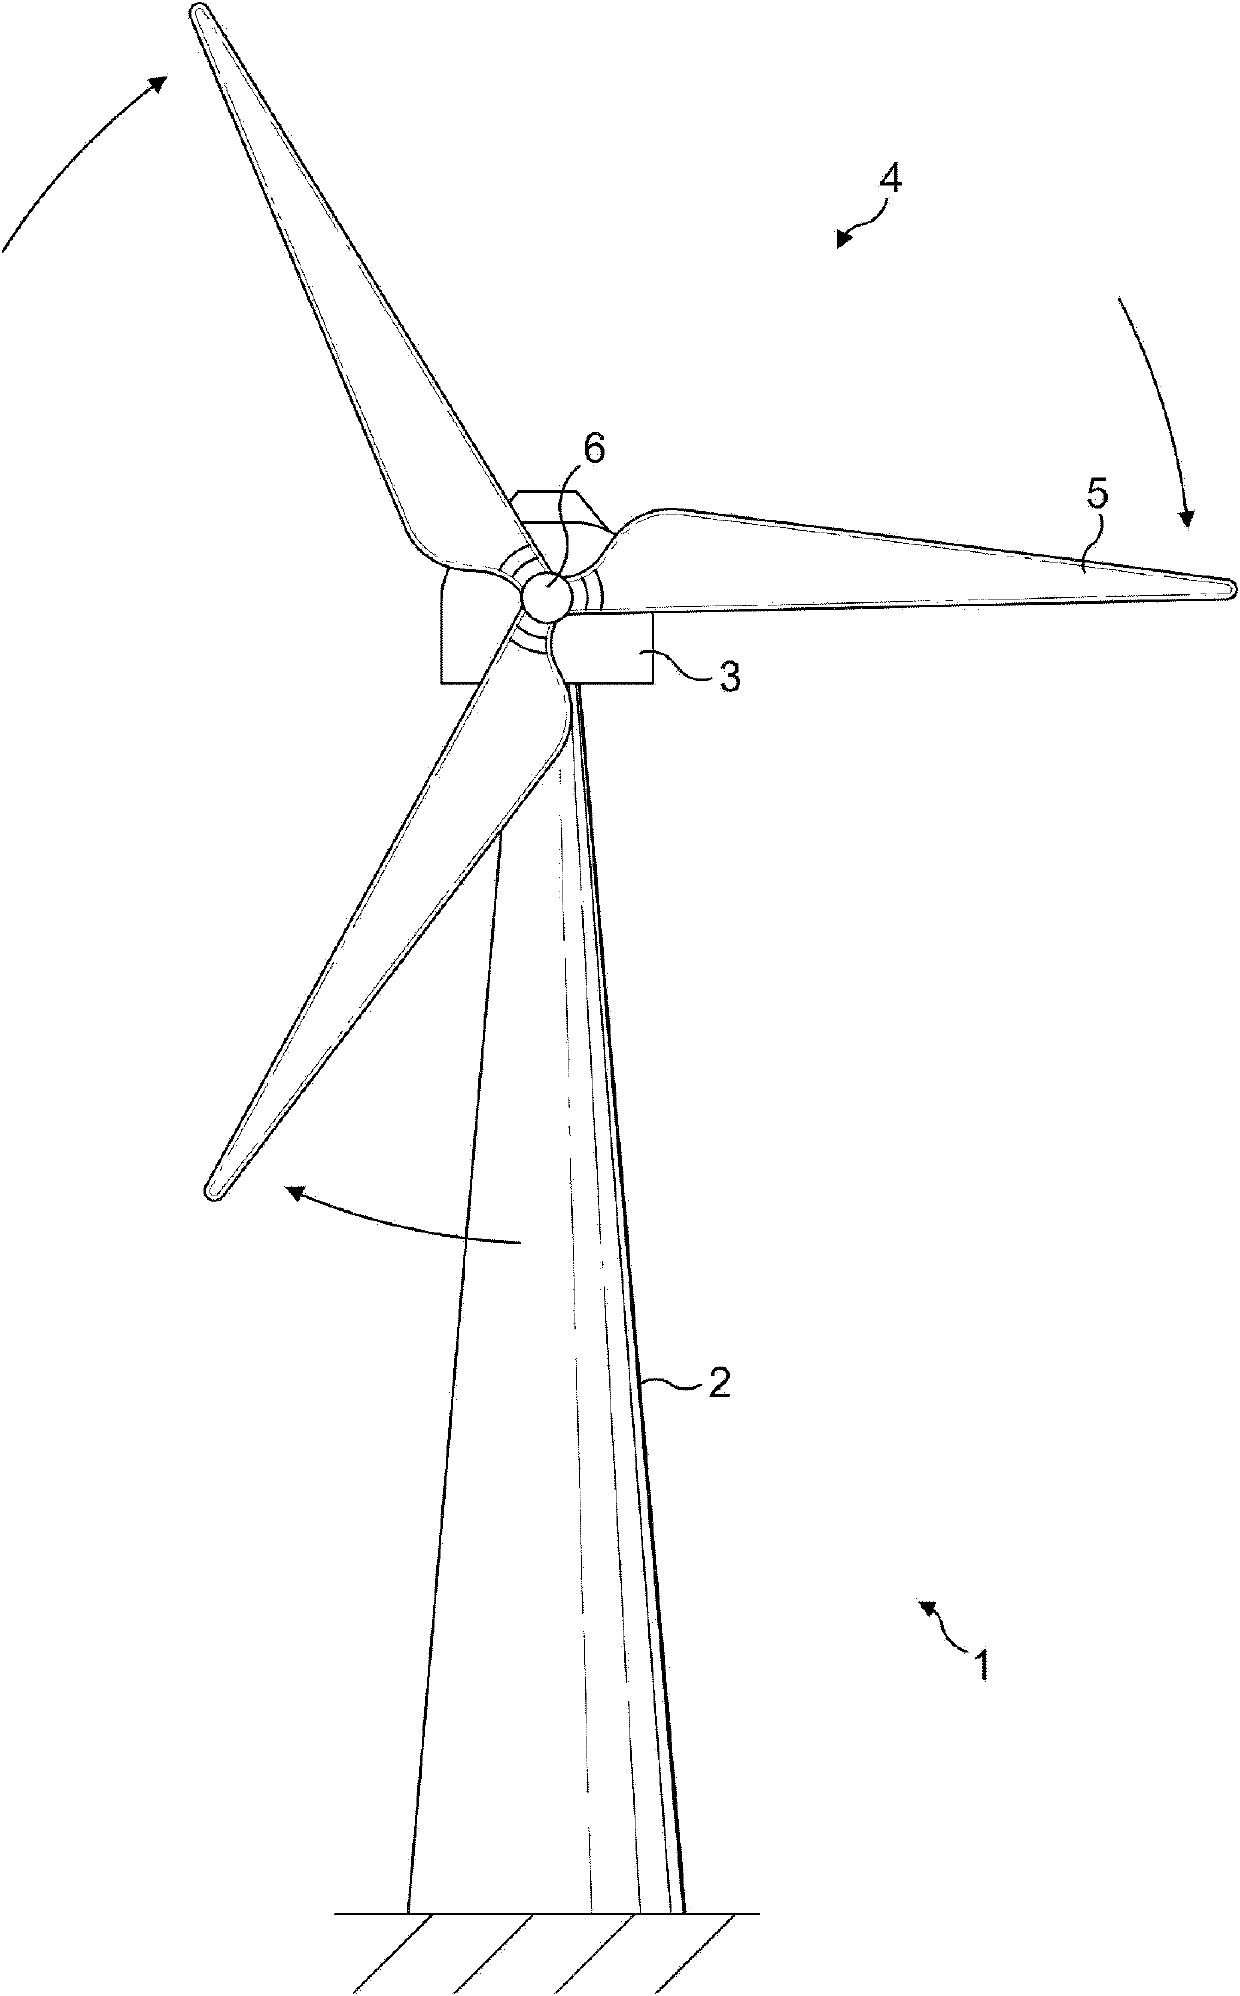 Wind turbine rotor and wind turbine rotor maintenance method